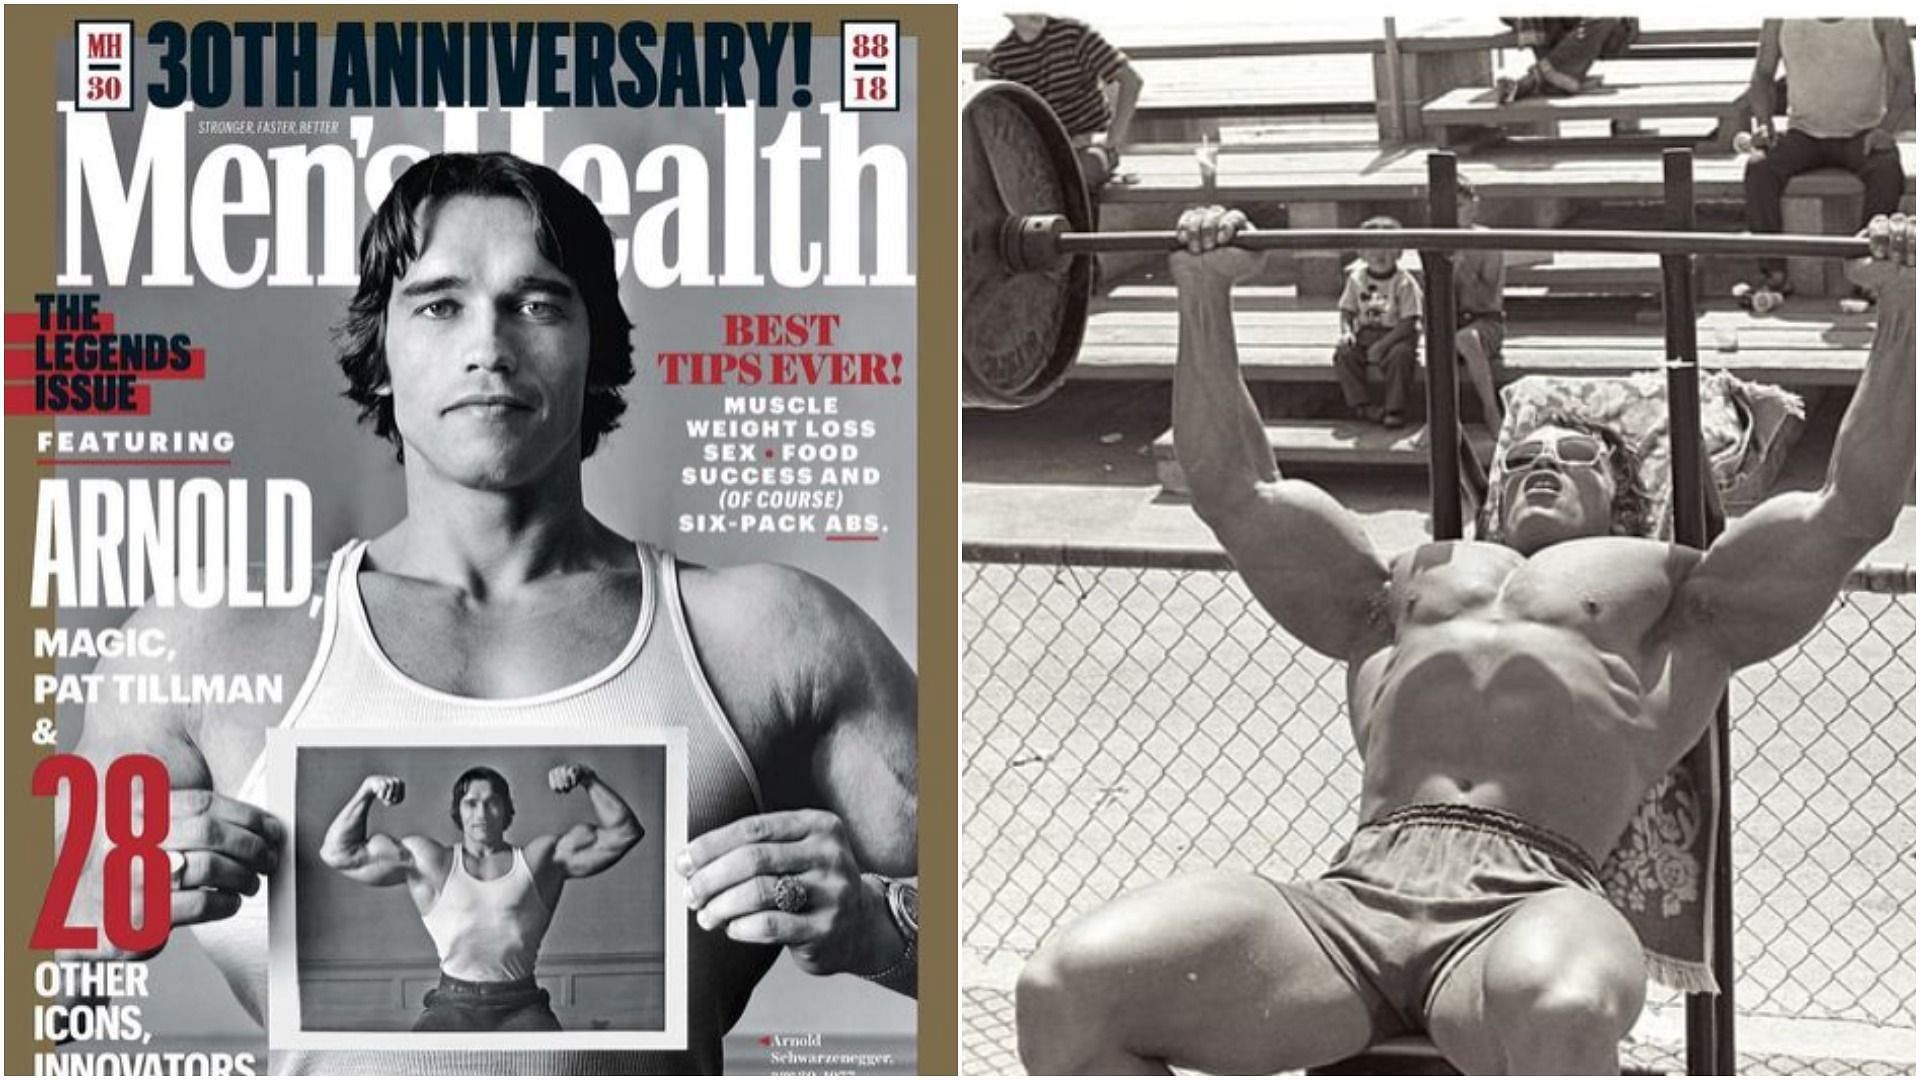 7 Best Kettlebell Exercises To Get Strong Shoulders Like Arnold Schwarzenegger